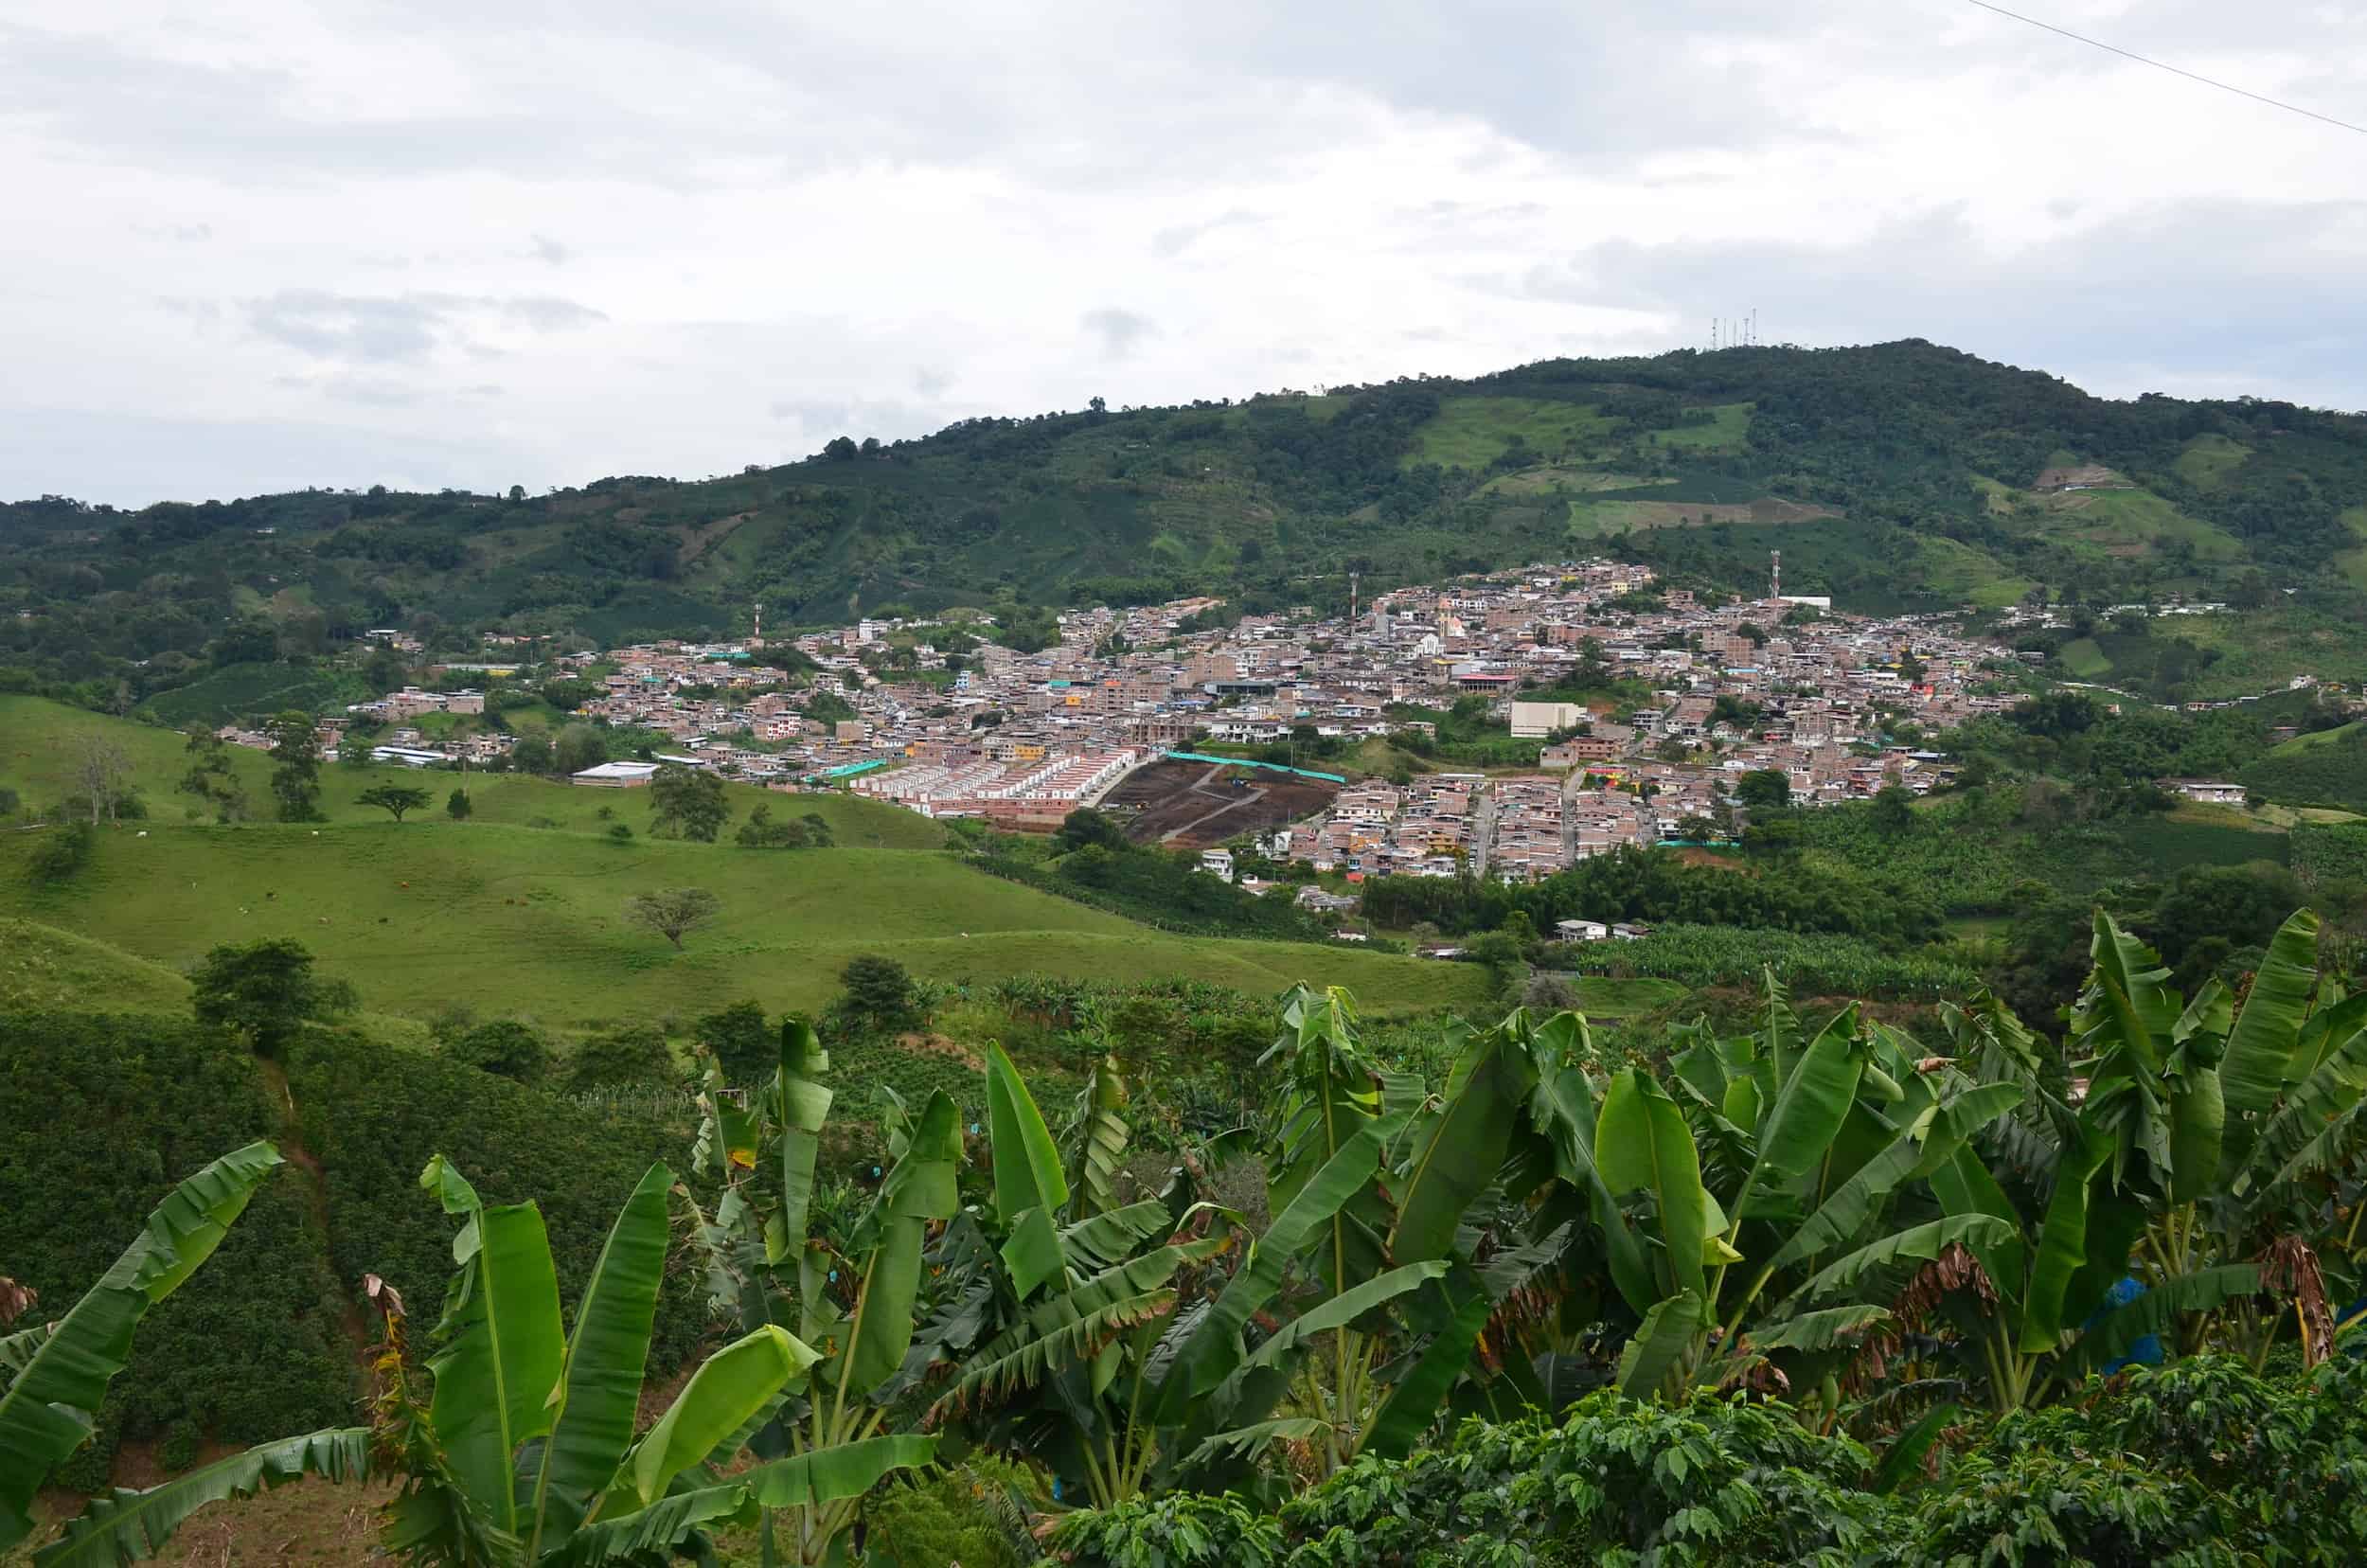 View of Belén de Umbría at Mirador Las Veraneras in Belén de Umbría, Risaralda, Colombia